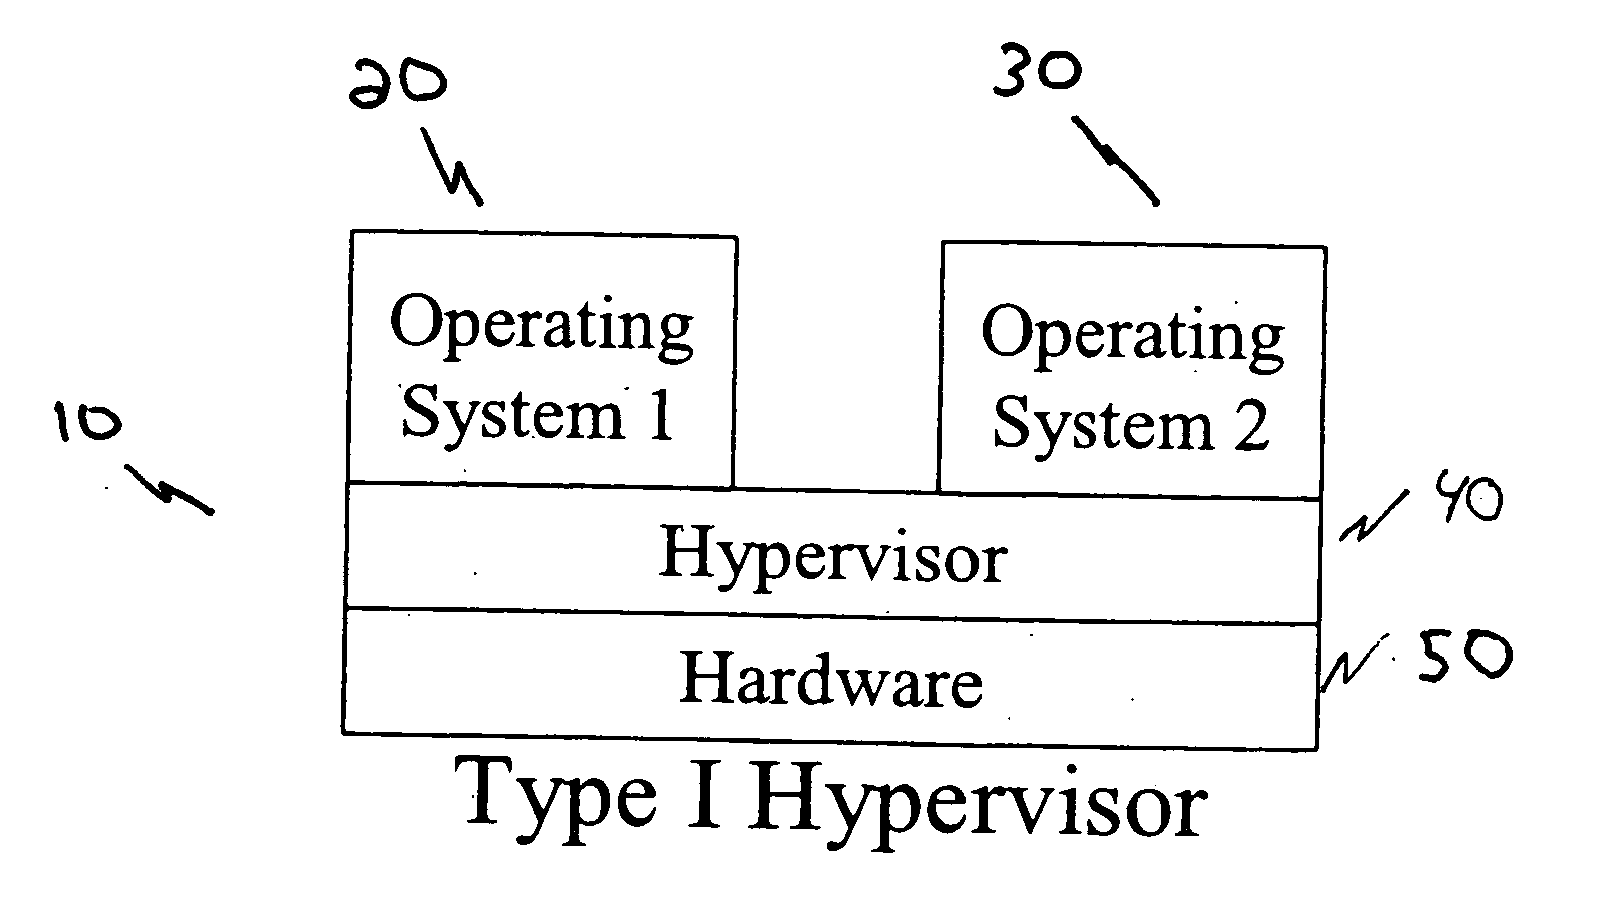 Hypervisor area for email virus testing